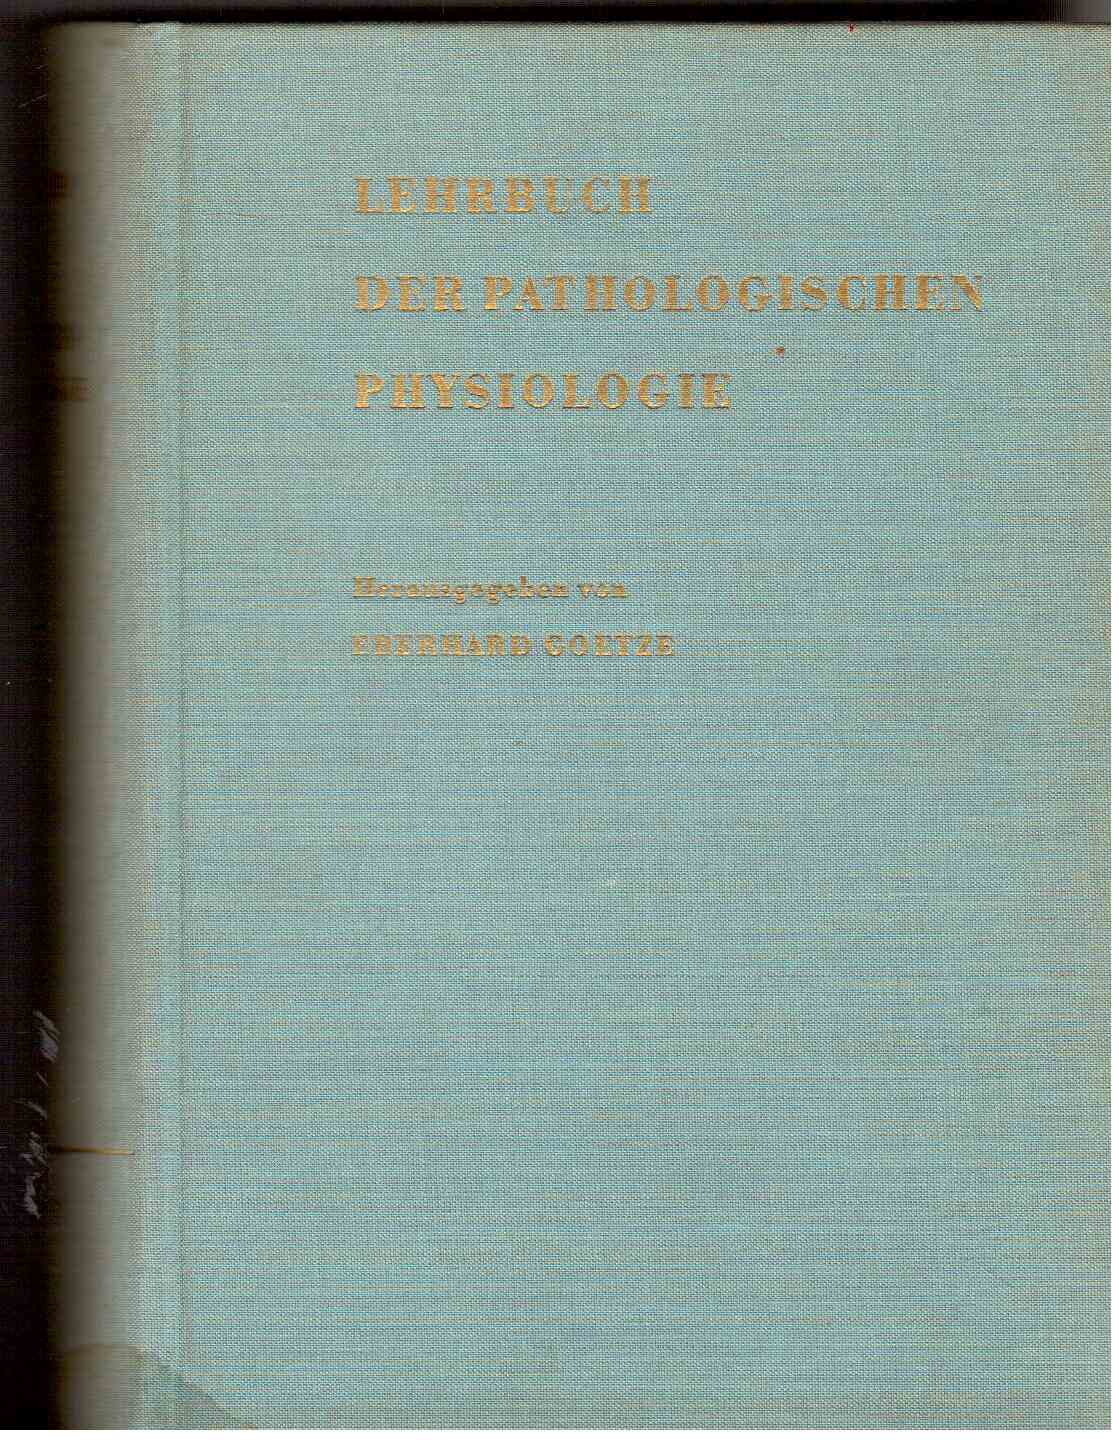 Lehrbuch der pathologischen Physiologie